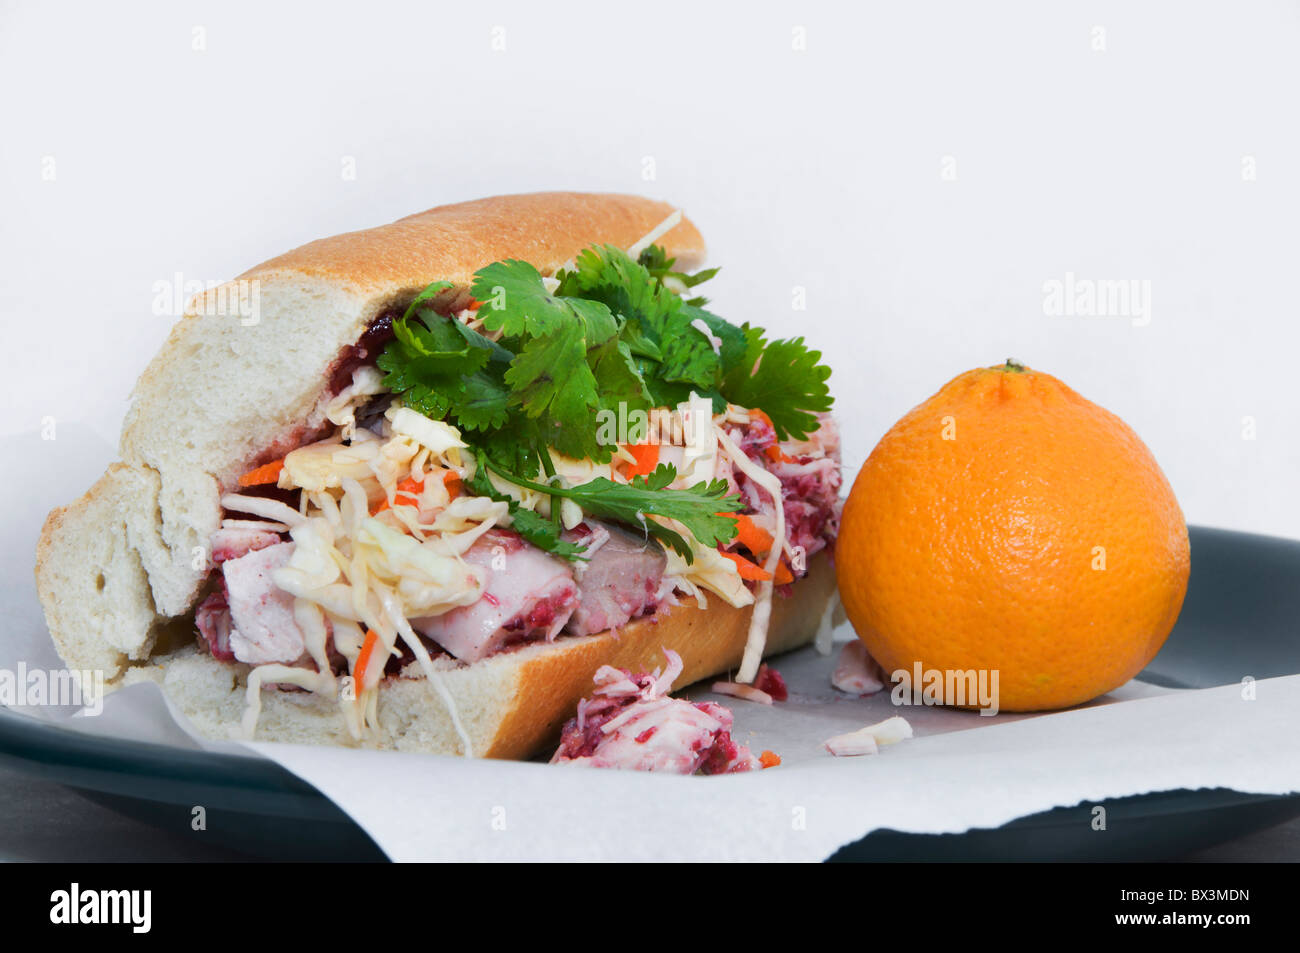 Asiatische inspirierte Aromen füllen dieses Sandwich mit übrig gebliebenen Türkei, Cranberry-Sauce, Koriander, Kohl und Gewürzen hergestellt. Stockfoto